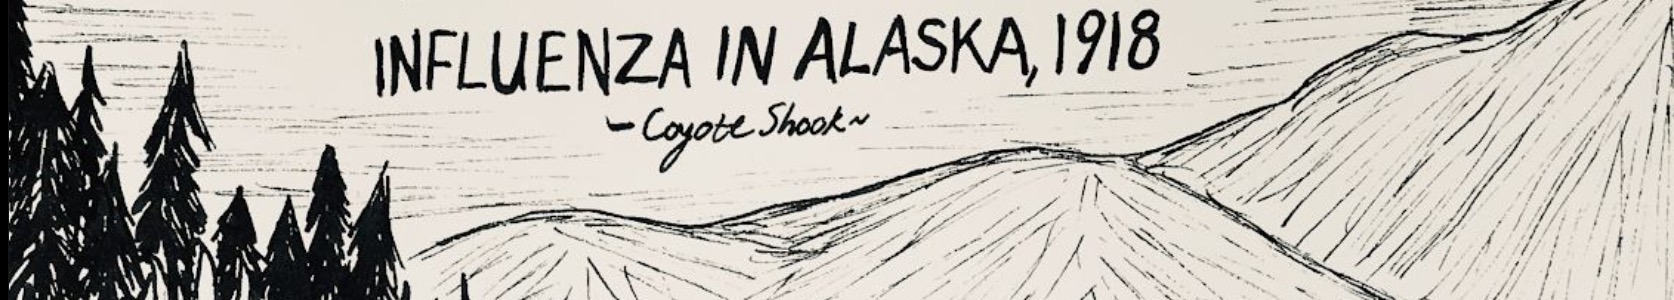 Influenza in Alaska, 1918 Coyote Shook